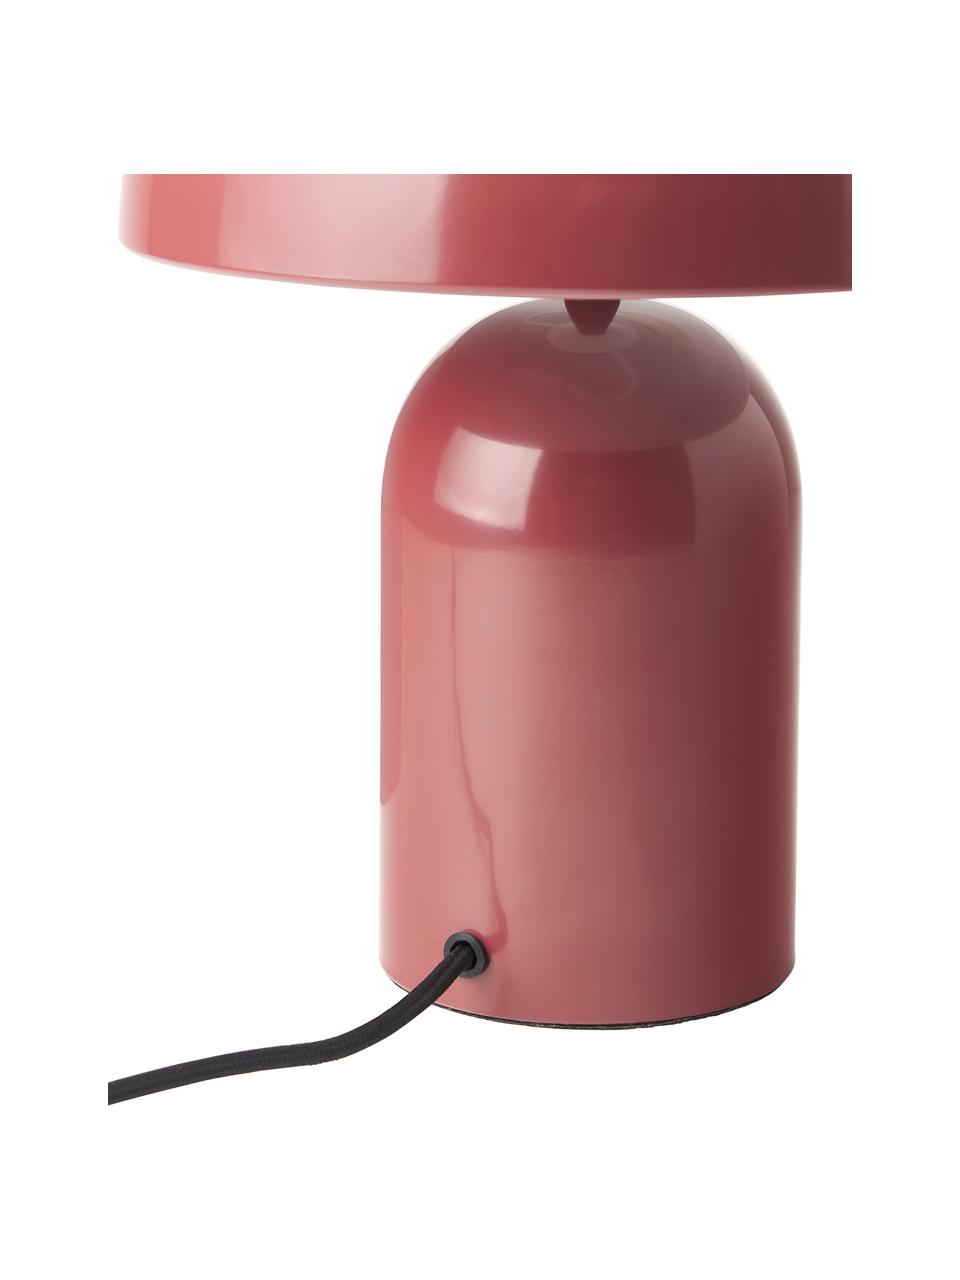 Lampa stołowa w stylu retro Walter, Czerwony, błyszczący, Ø 25 x W 34 cm